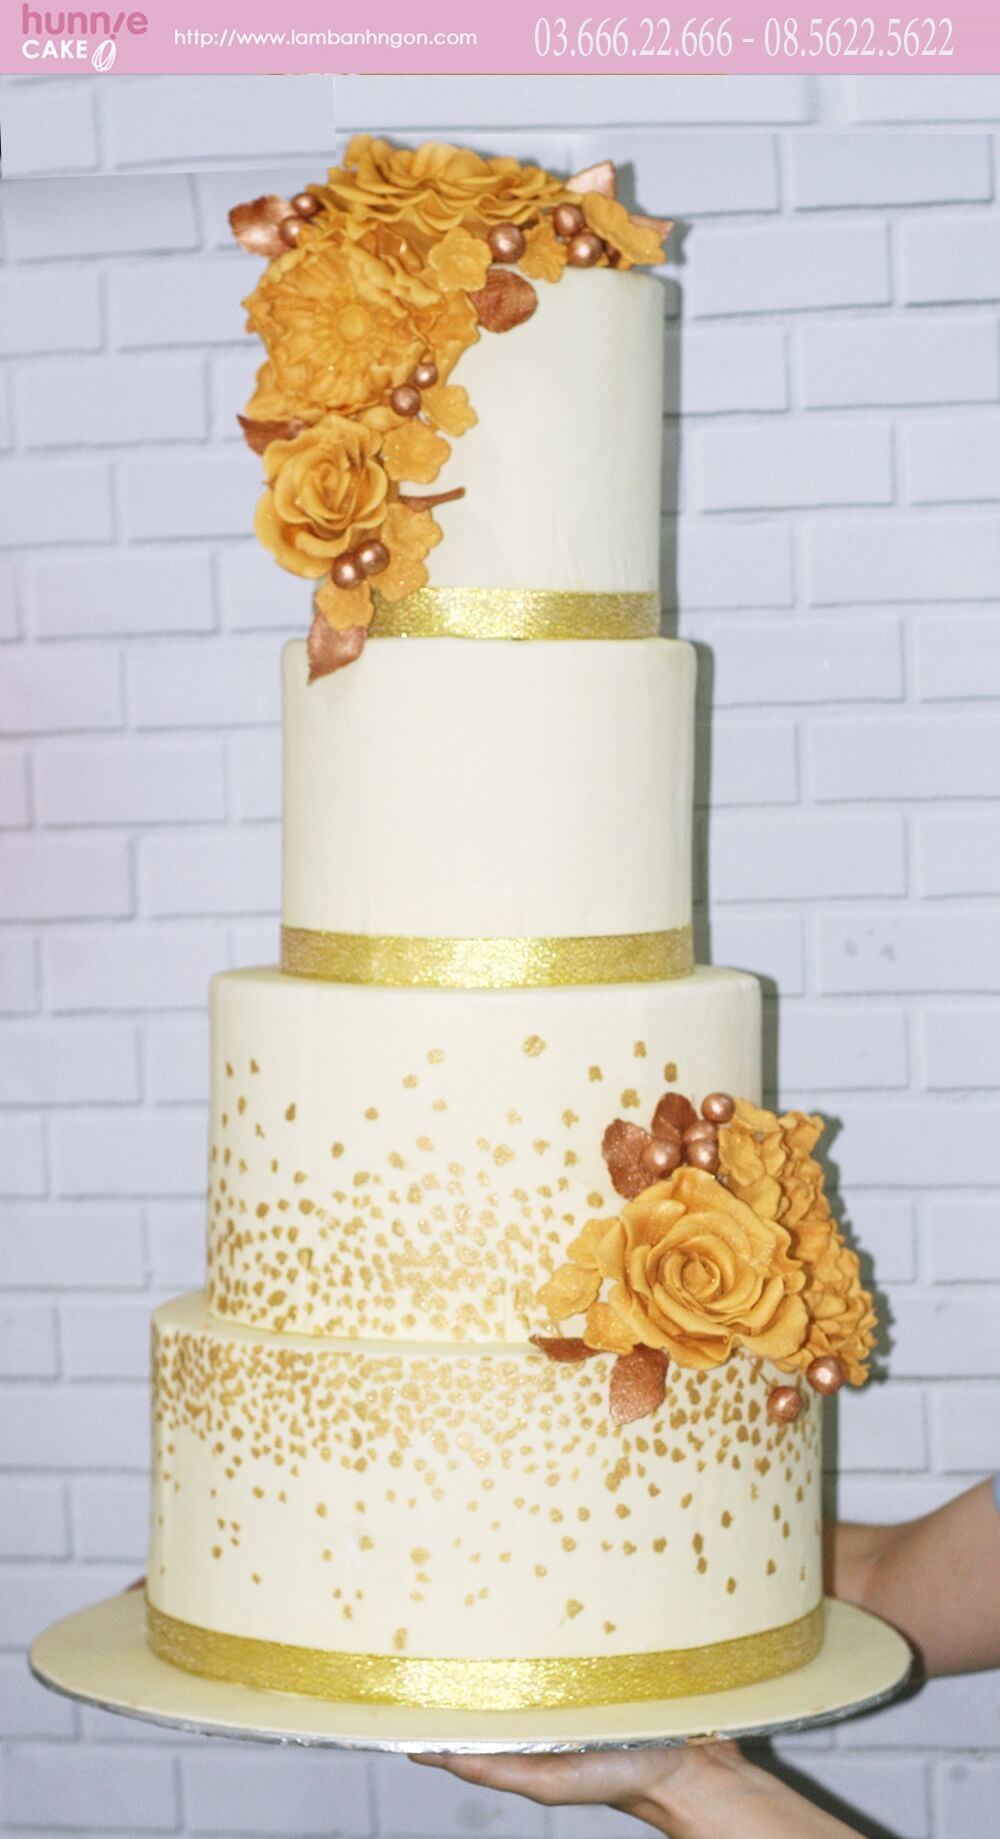 Bánh cưới, bánh kỷ niệm 4 tầng trang trí hoa màu vàng đồng nổi bật 6235 - Bánh ngon đẹp